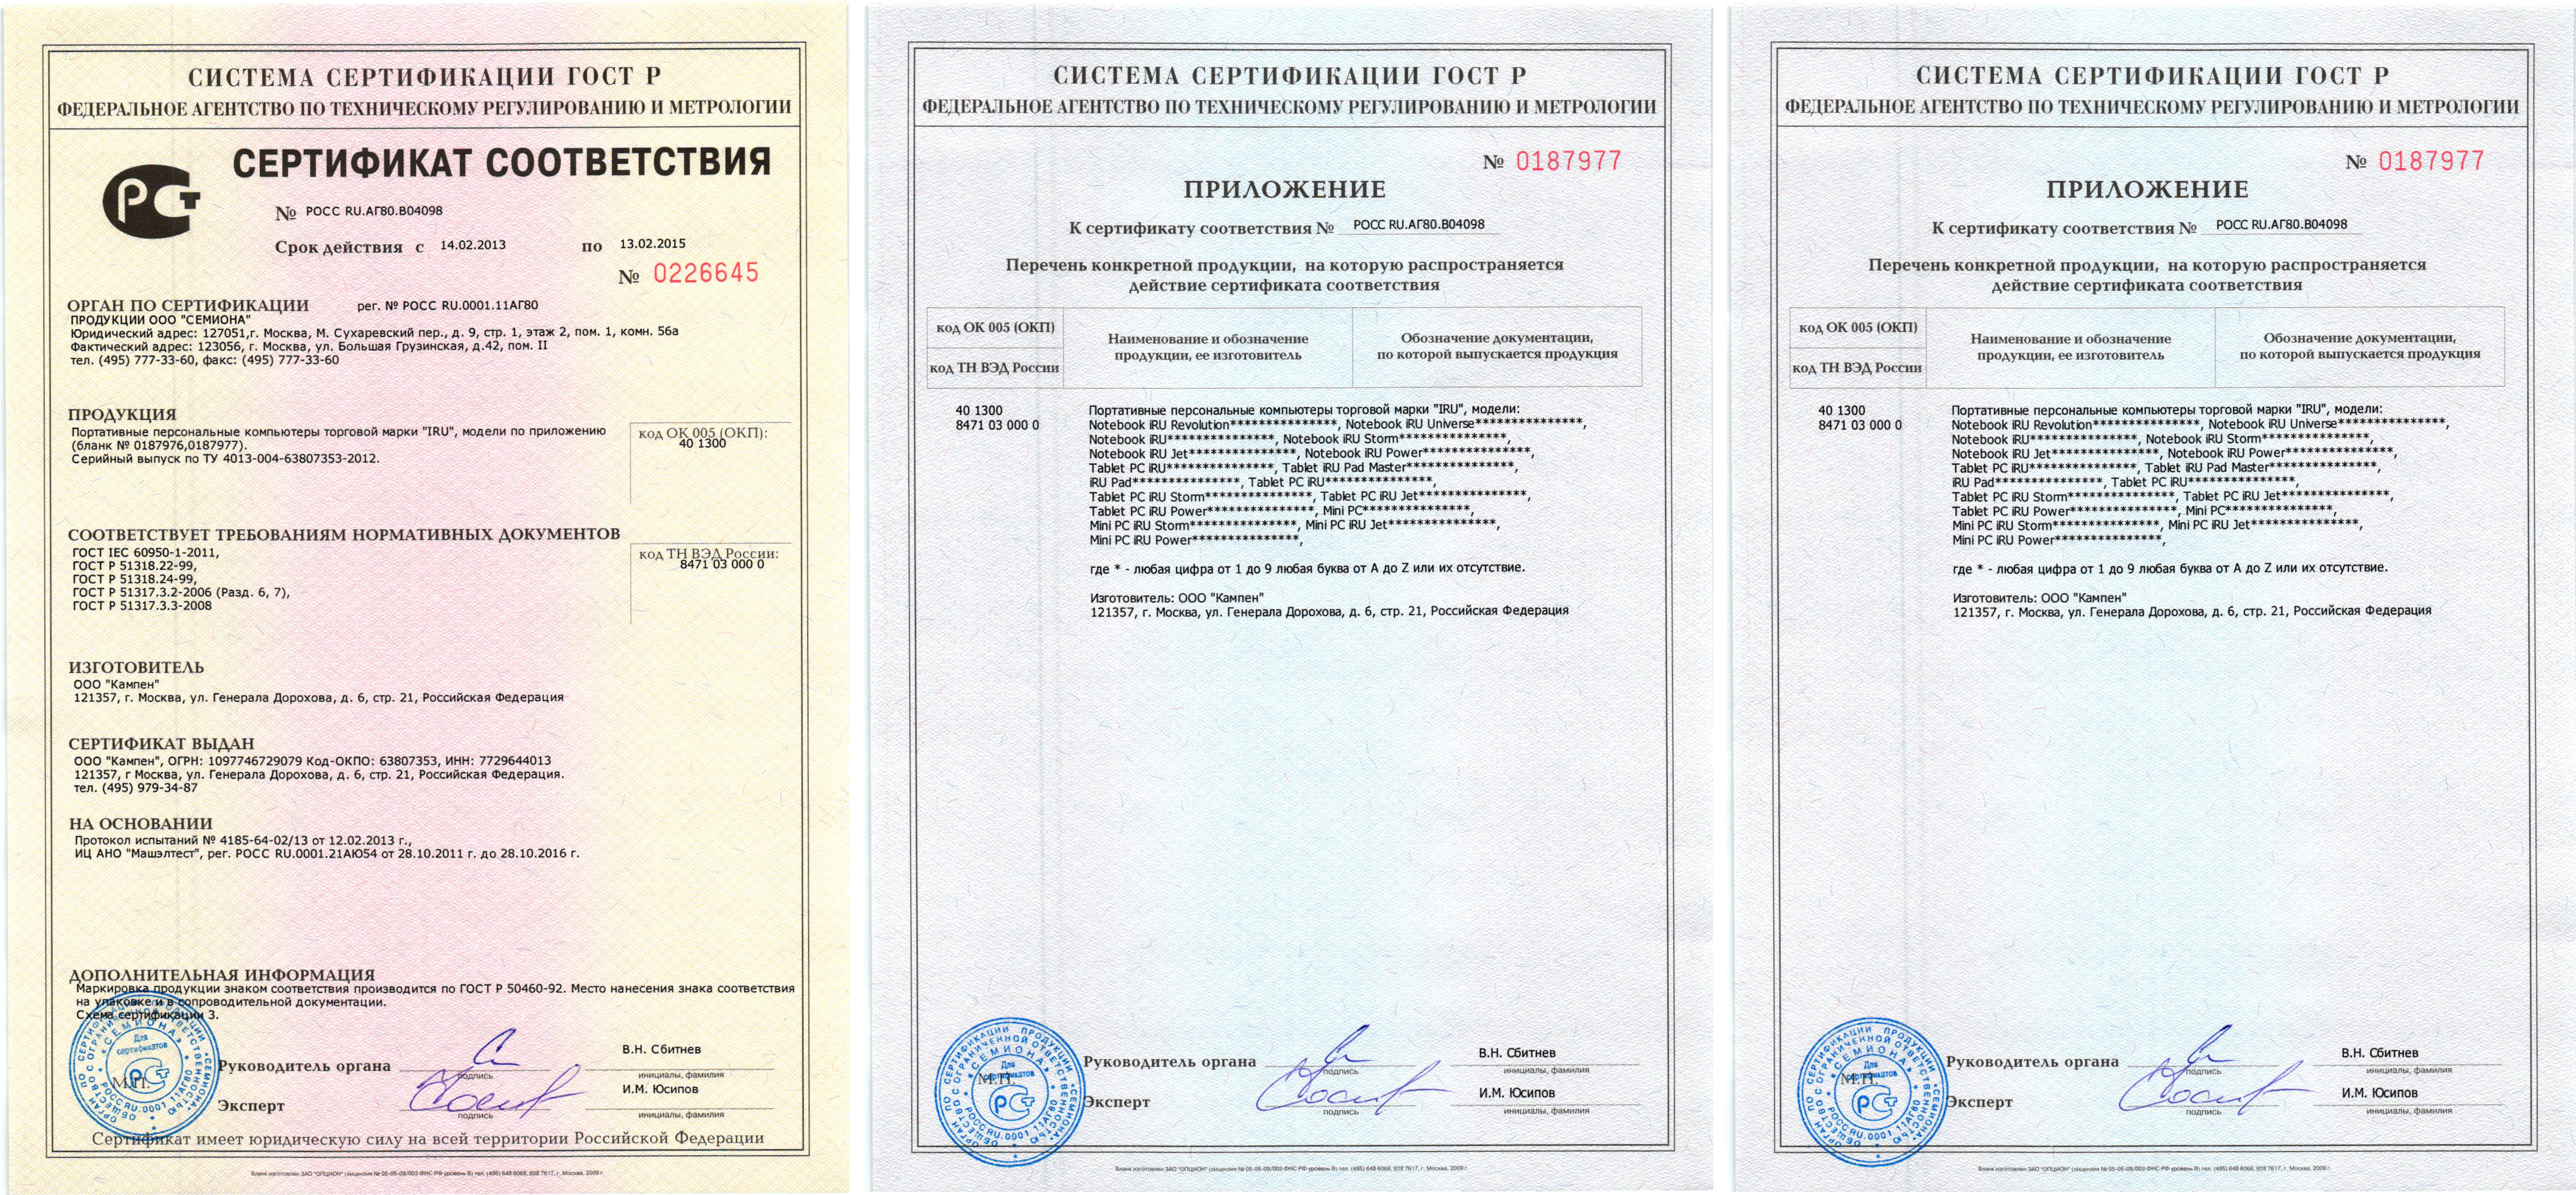 32 5 61 15. Сертификат соответствия. Сертификат соответствия на персональный компьютер. Сертификат соответствия на ПК. Сертификат на радиостанцию.